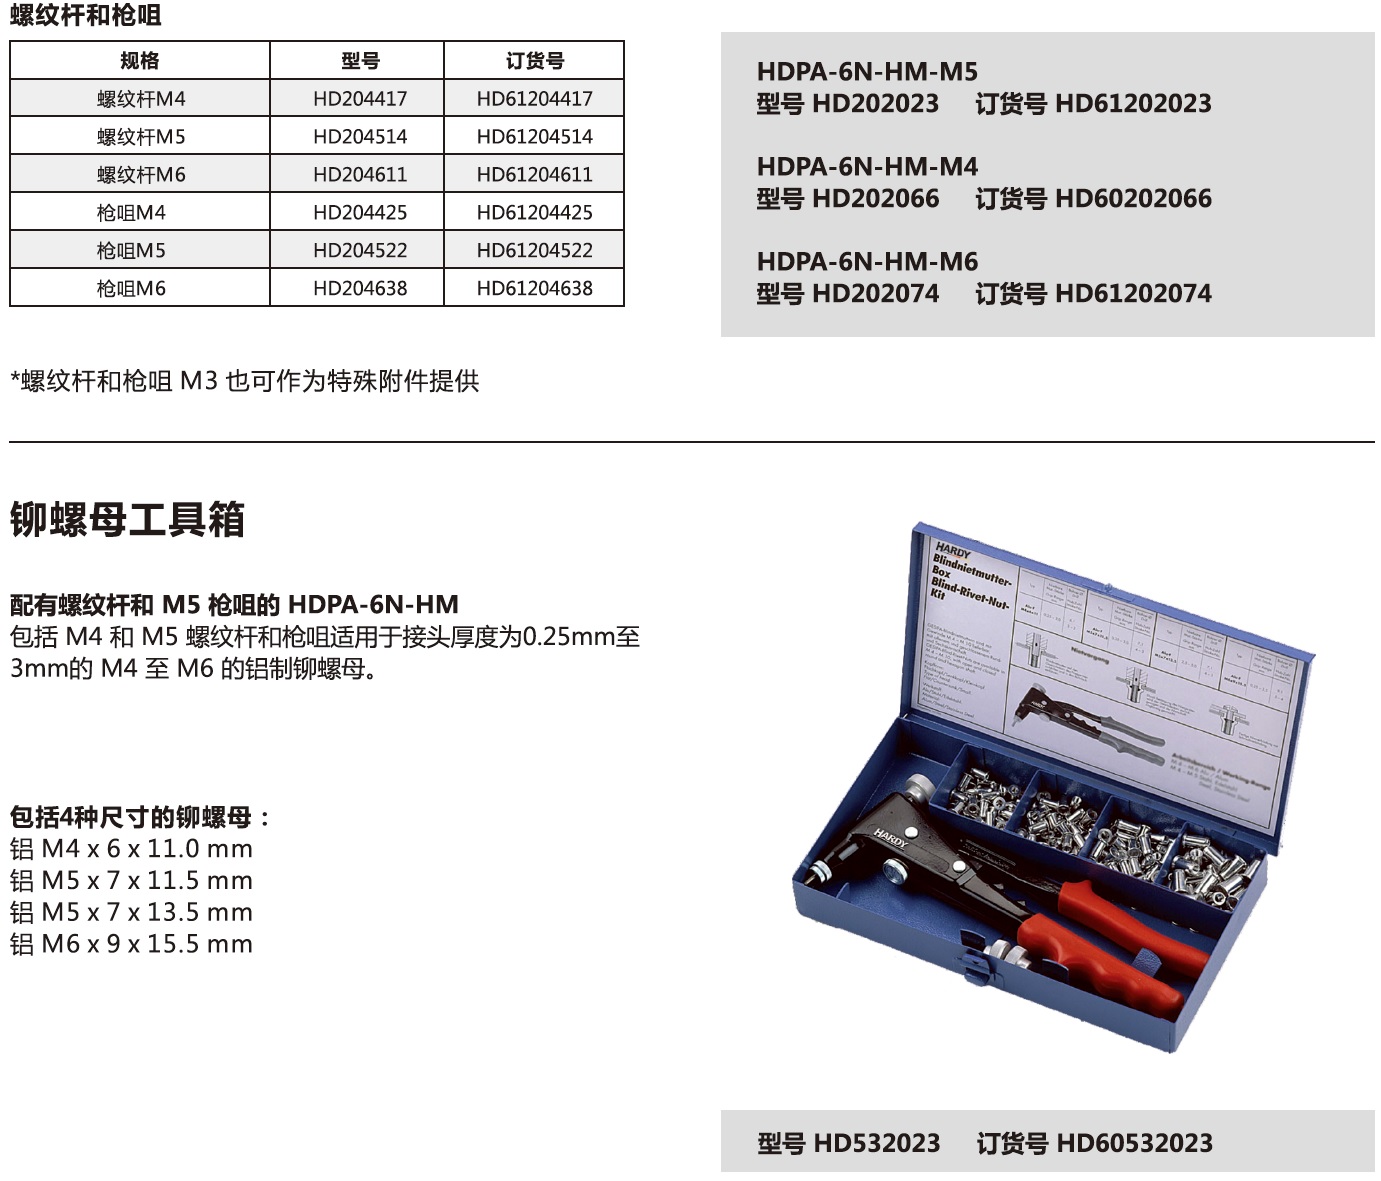 HDPA-6N-HM铆螺母手动安装工具-2.jpg